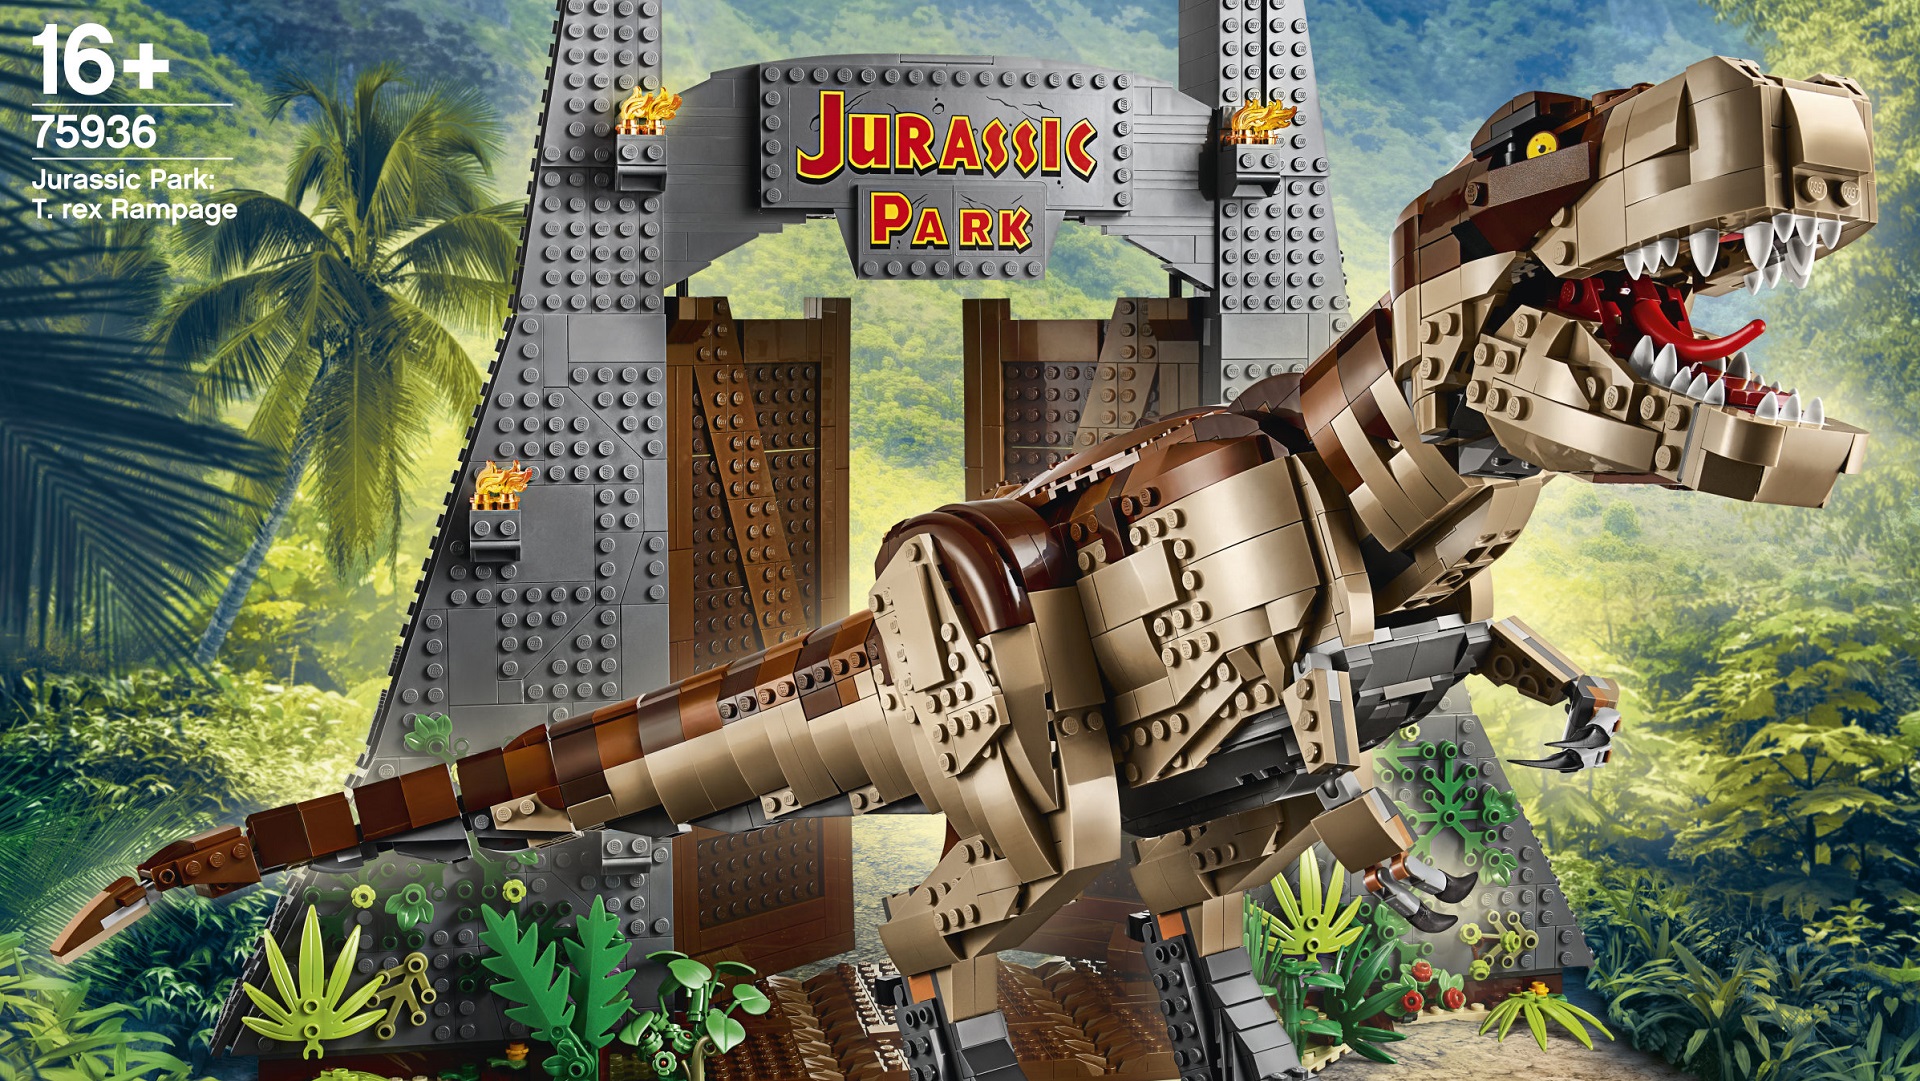 Huge Jurassic Park LEGO set lands in South Africa for a ...